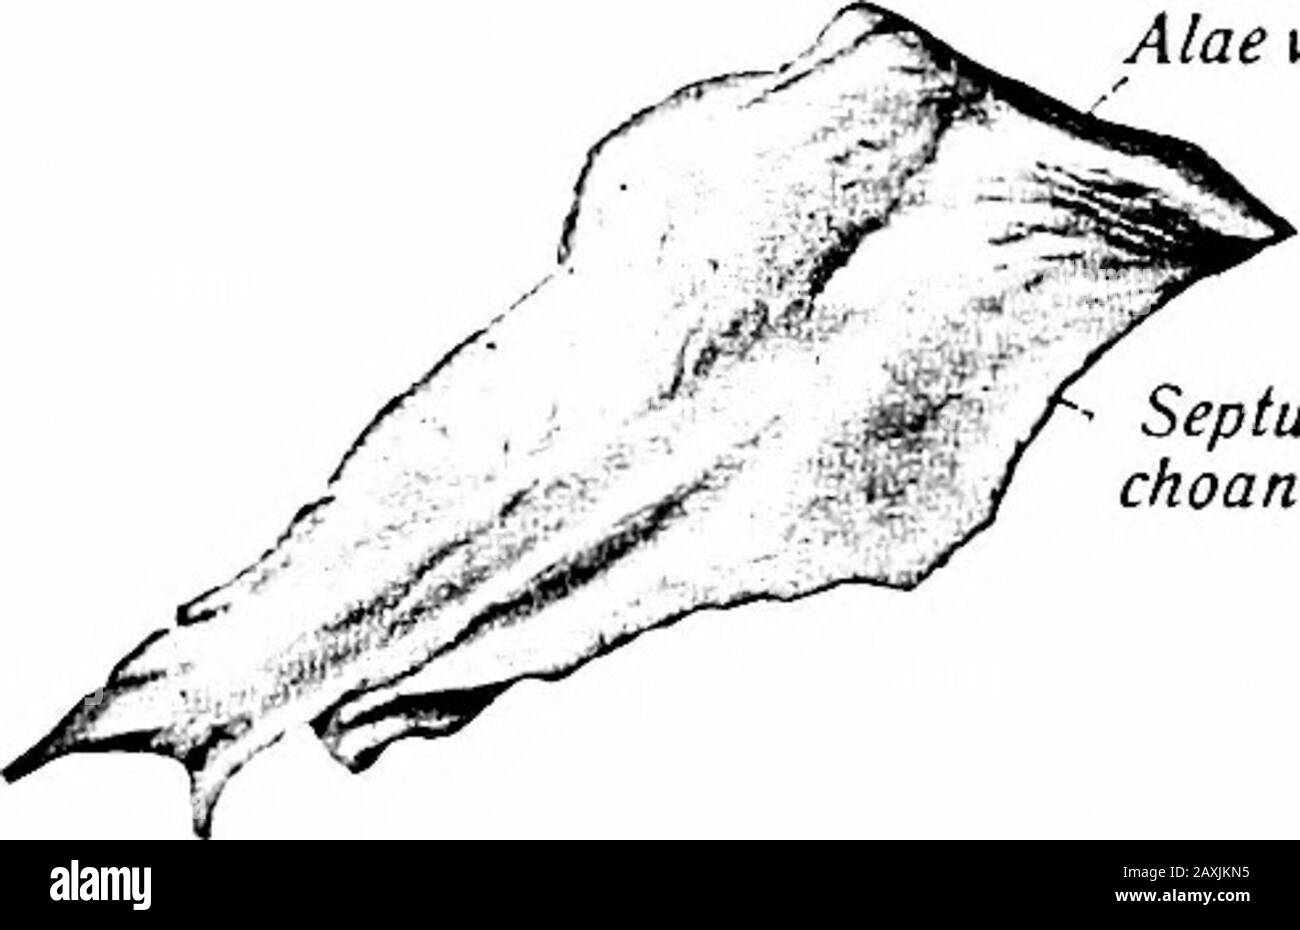 Un manuel d'anatomie . alis) pour le sac lacrymal; la surface postérieure est la surface orbitale appropriée. La crête se termine ci-dessous dans un hooklet{hamidus lacrimalis) qui fait partie de la limite supérieure du conduit thénasolacrimal. La paroi médiane de la rainure lacrymale se termine par le processus décroissant. Une partie de la crête donne l'attachement au VOMEUR 59 tendo oci et de la partie lacrymique du M. orbicularis oci. La surface de Themedial est inégale et se ferme dans les cellules éthmoïdales antérieures et forme une partie de la limite latérale de la méatus médiane du nez. Les marges sont inégales et articulées avec divers os Banque D'Images